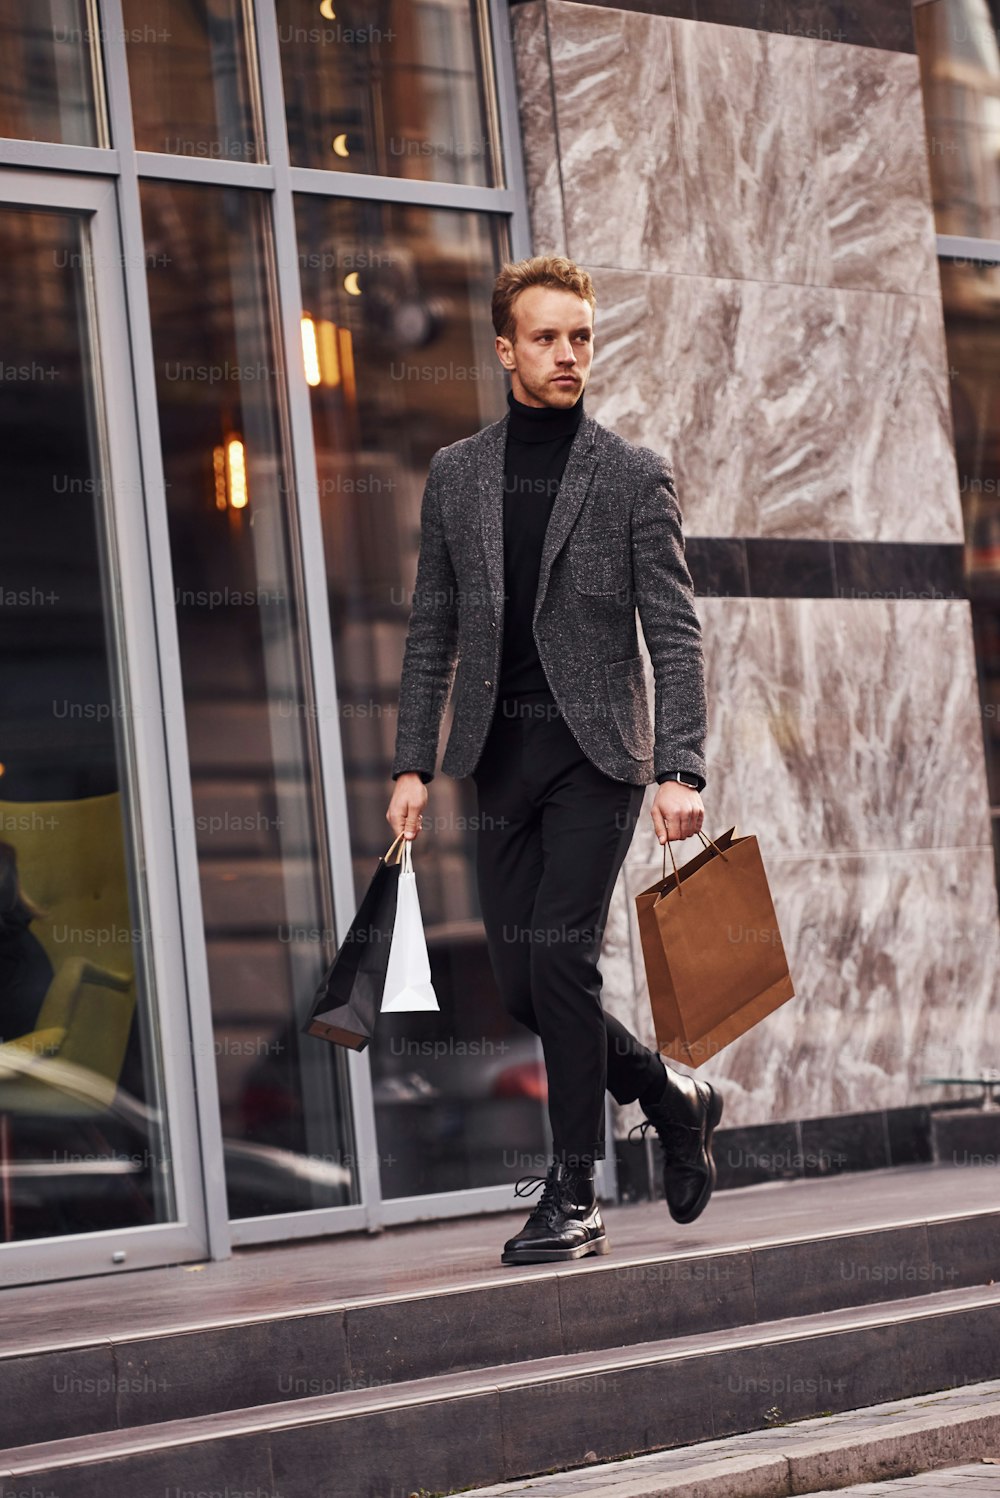 エレガントなフォーマルウェアを着て、ショッピングパッケージを持った男性が、近代的な建物を背景に外にいます。